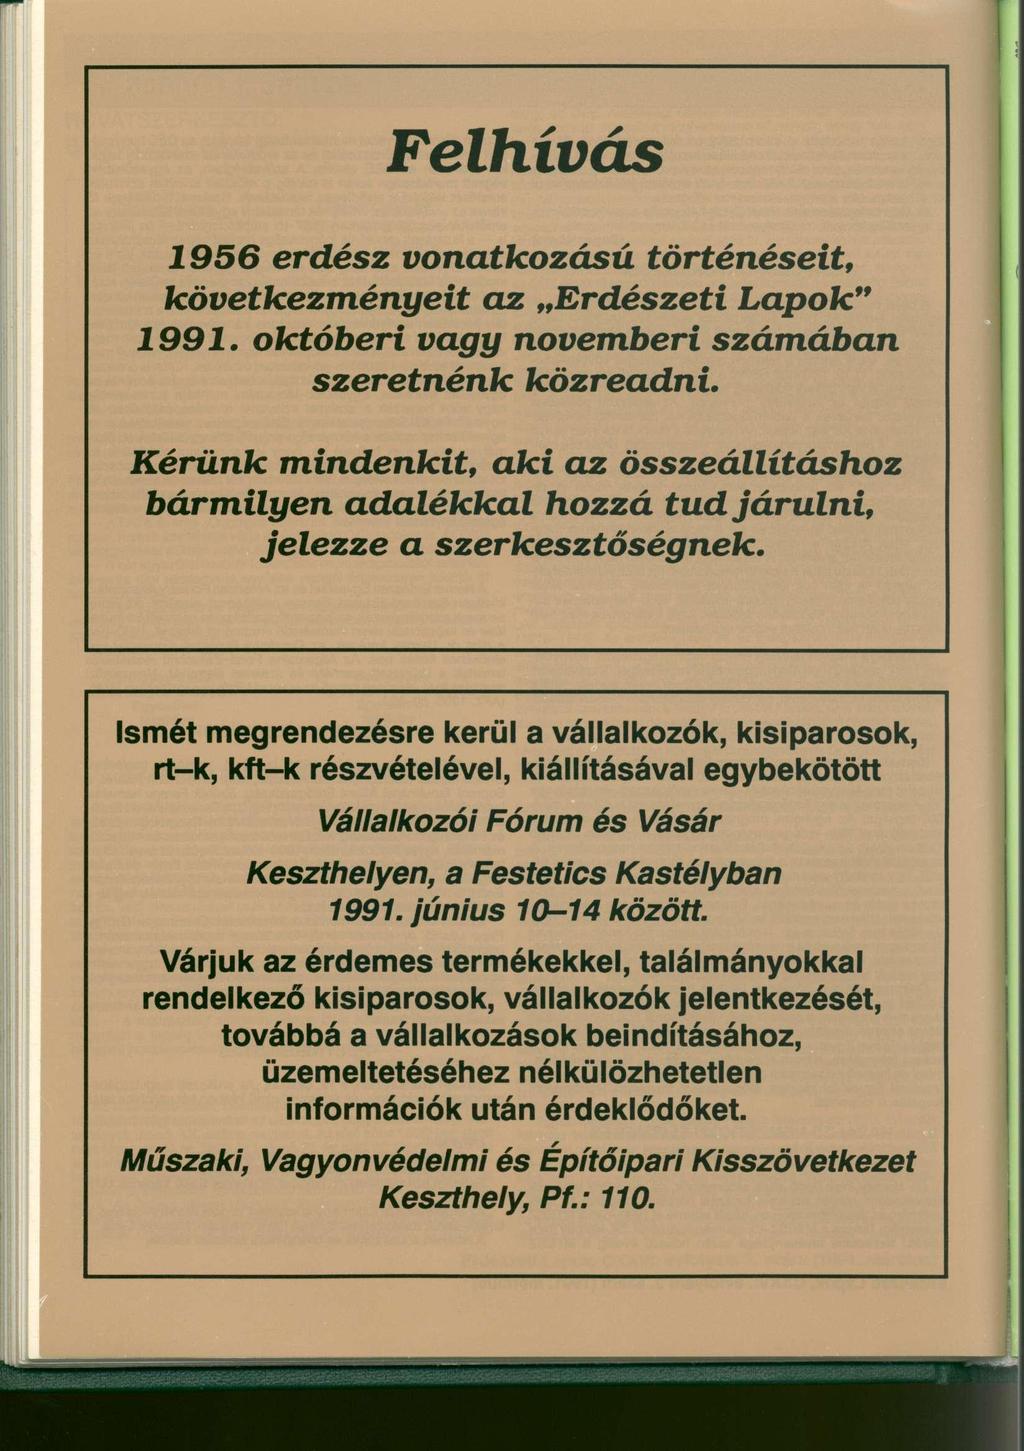 Felhívás 1956 erdész vonatkozású történéseit, következményeit az Erdészeti Lapok" 1991. októberi vagy novemberi számában szeretnénk közreadni.